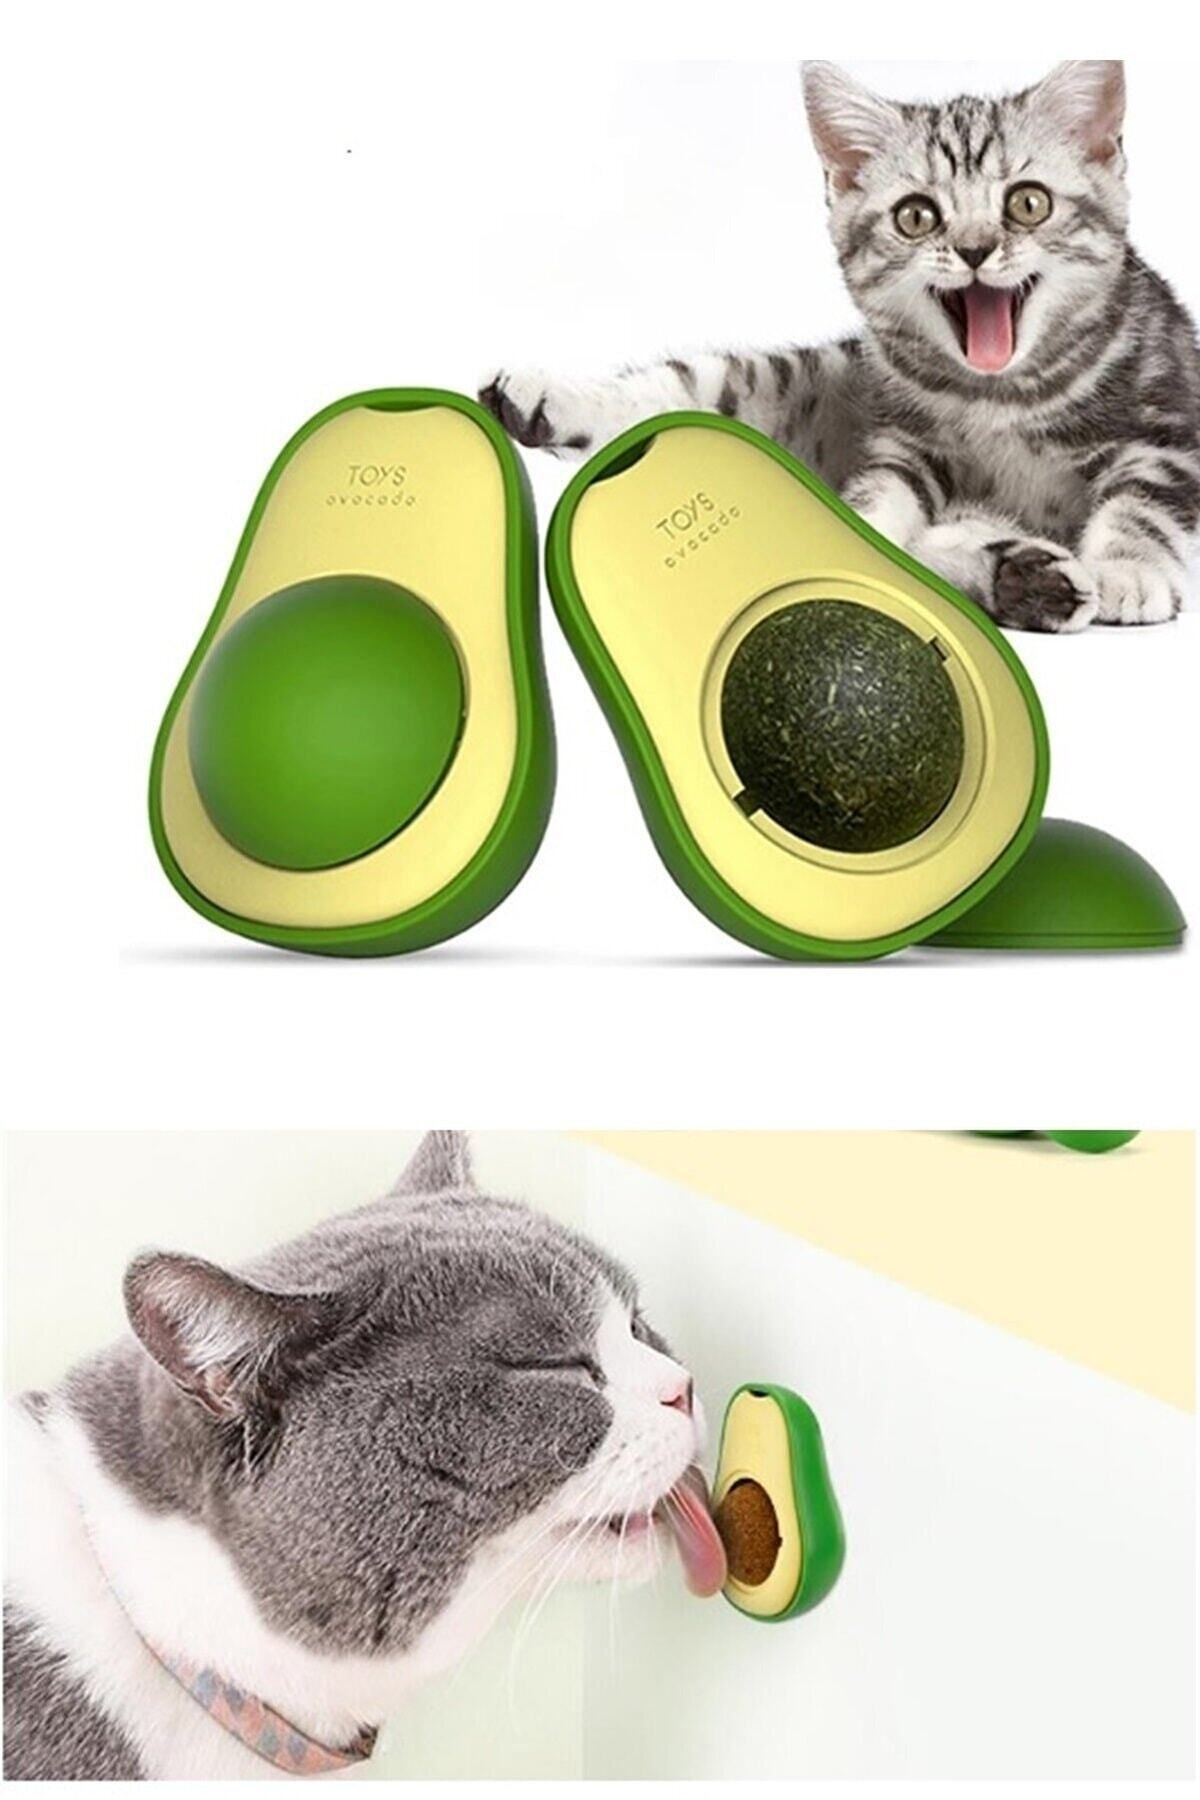 ozzyes ® Kedi Yalama Topu Avokado Şeklinde Otlu Interaktif 360 Derece Dönen Oyun ve Yalama Topu